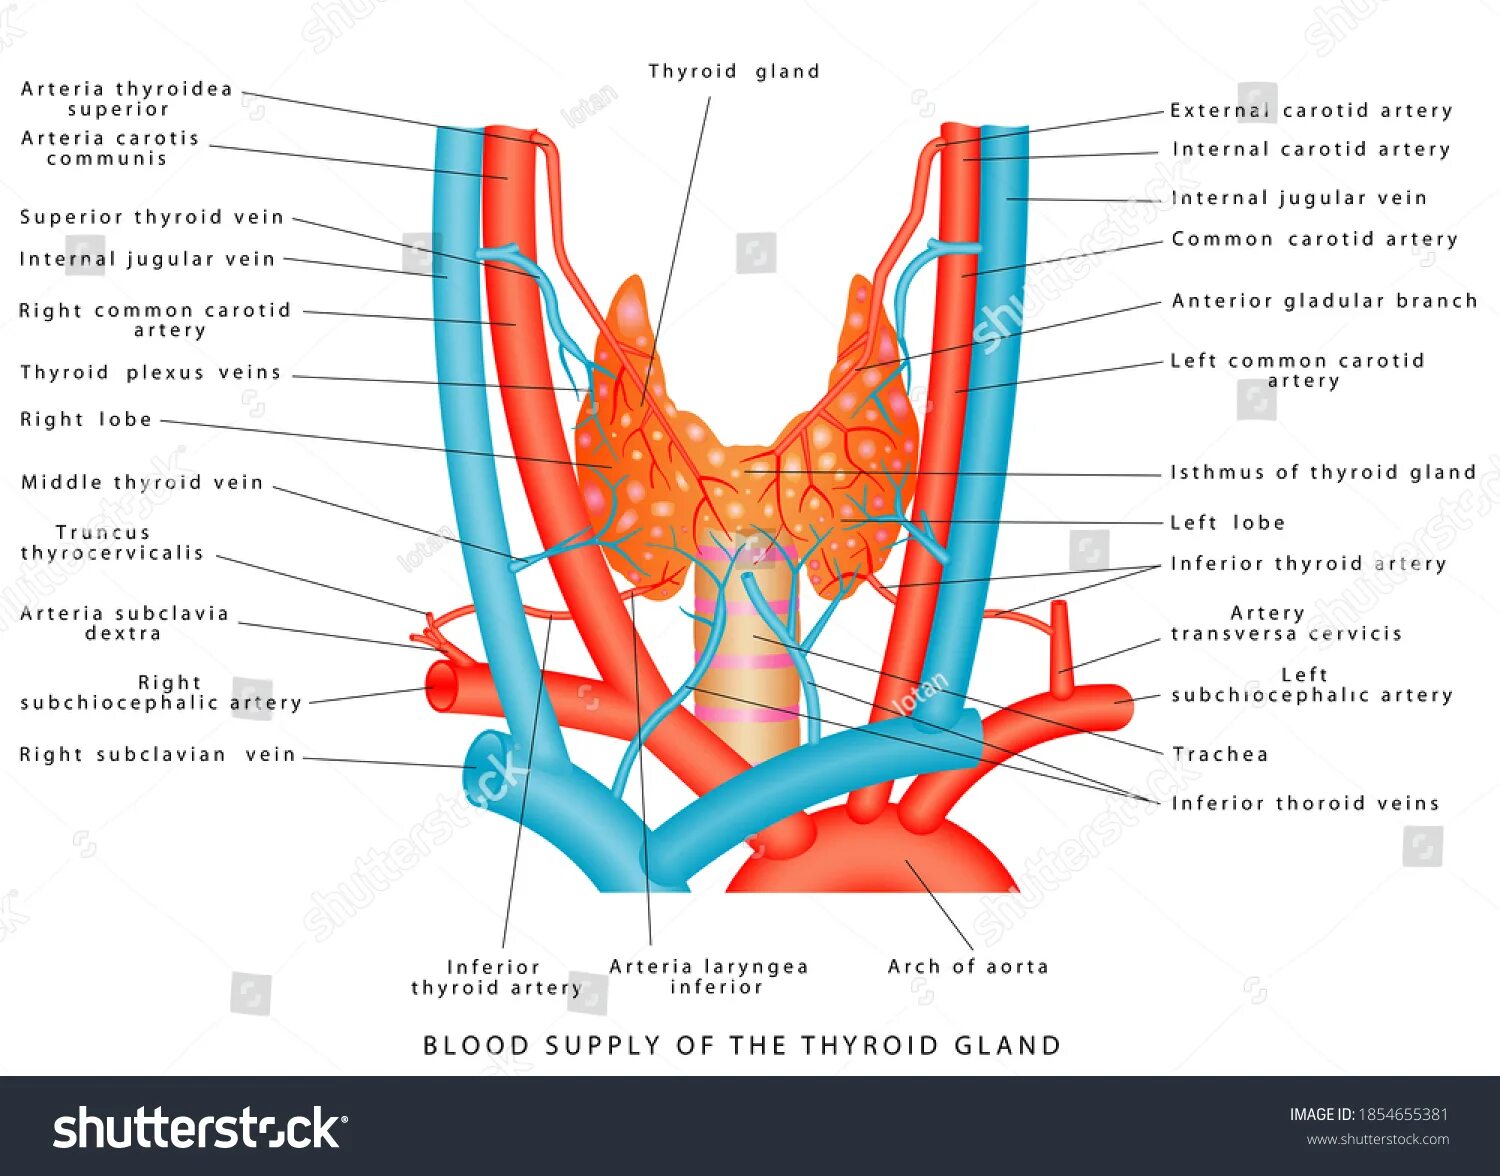 Артерии щитовидной железы анатомия. Кровоснабжение щитовидной железы анатомия. Артерии щитовидной железы схема. Кровоснабжение щитовидной железы топографическая анатомия. Артерии щитовидной железы